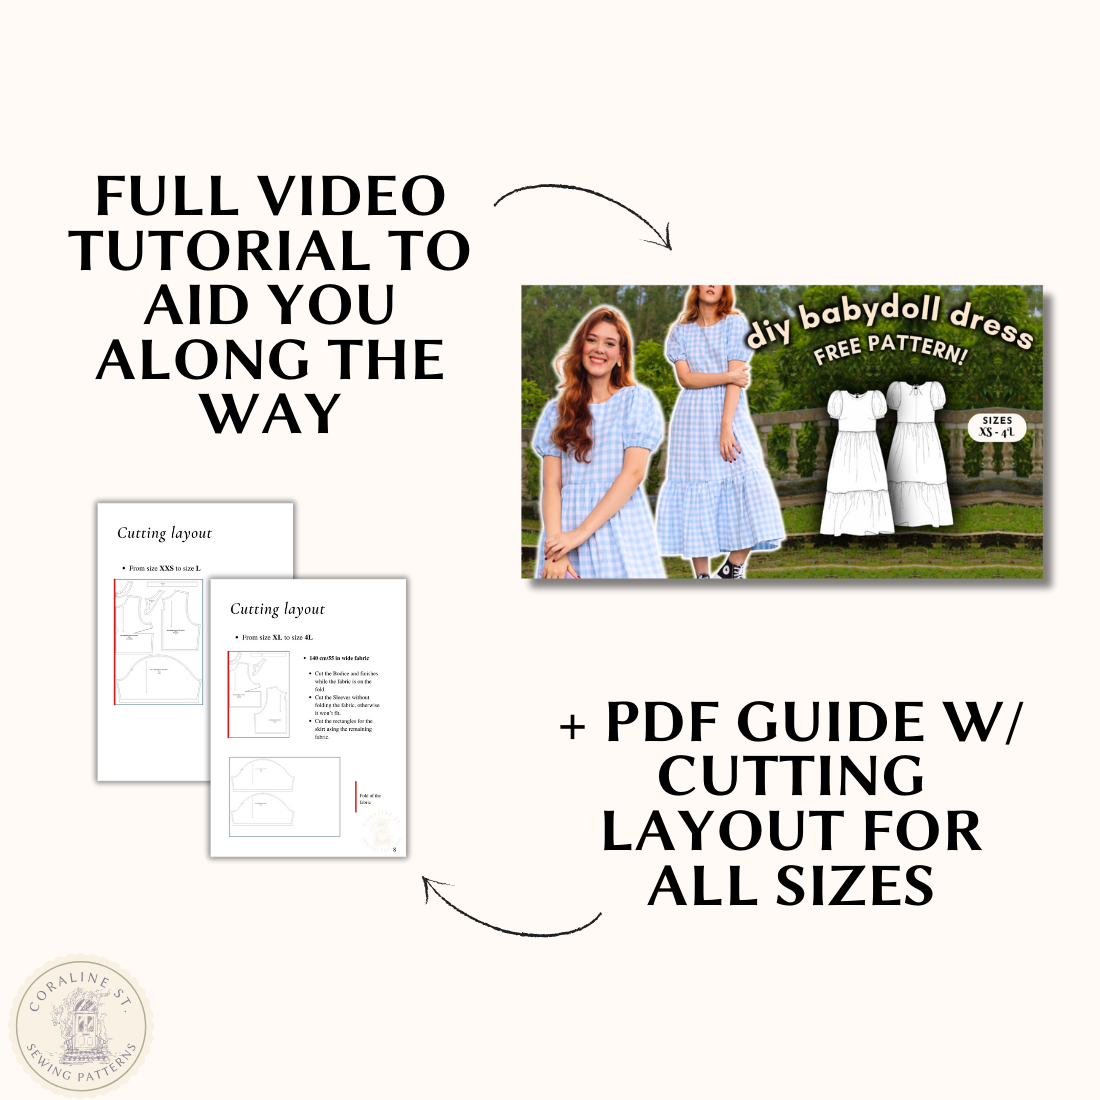 Becca Babydoll Dress FREE PDF Sewing Pattern